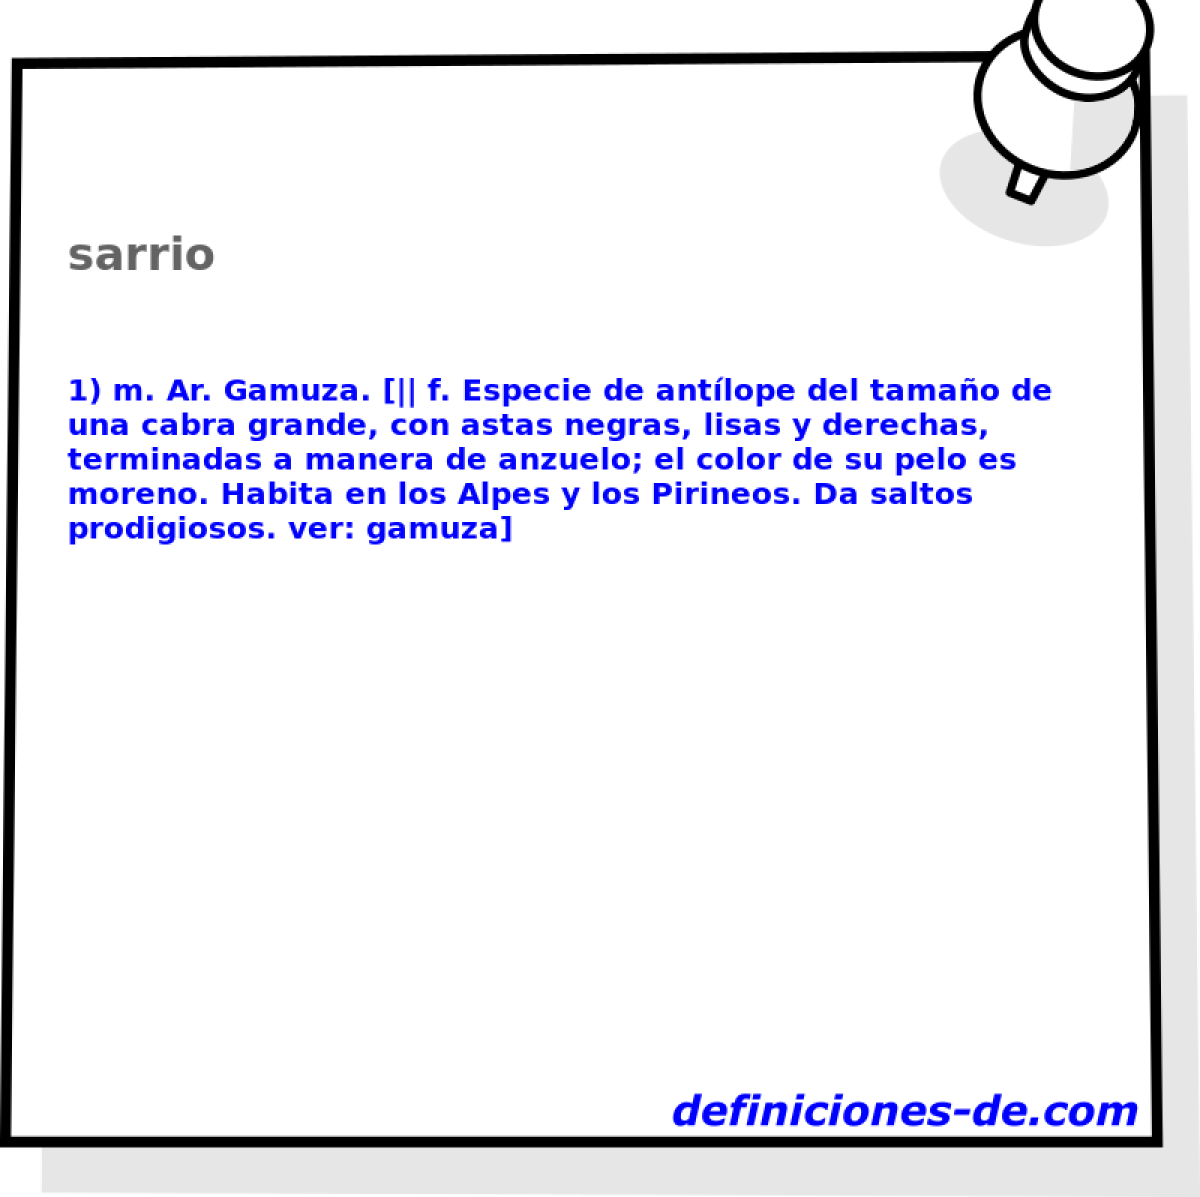 sarrio 